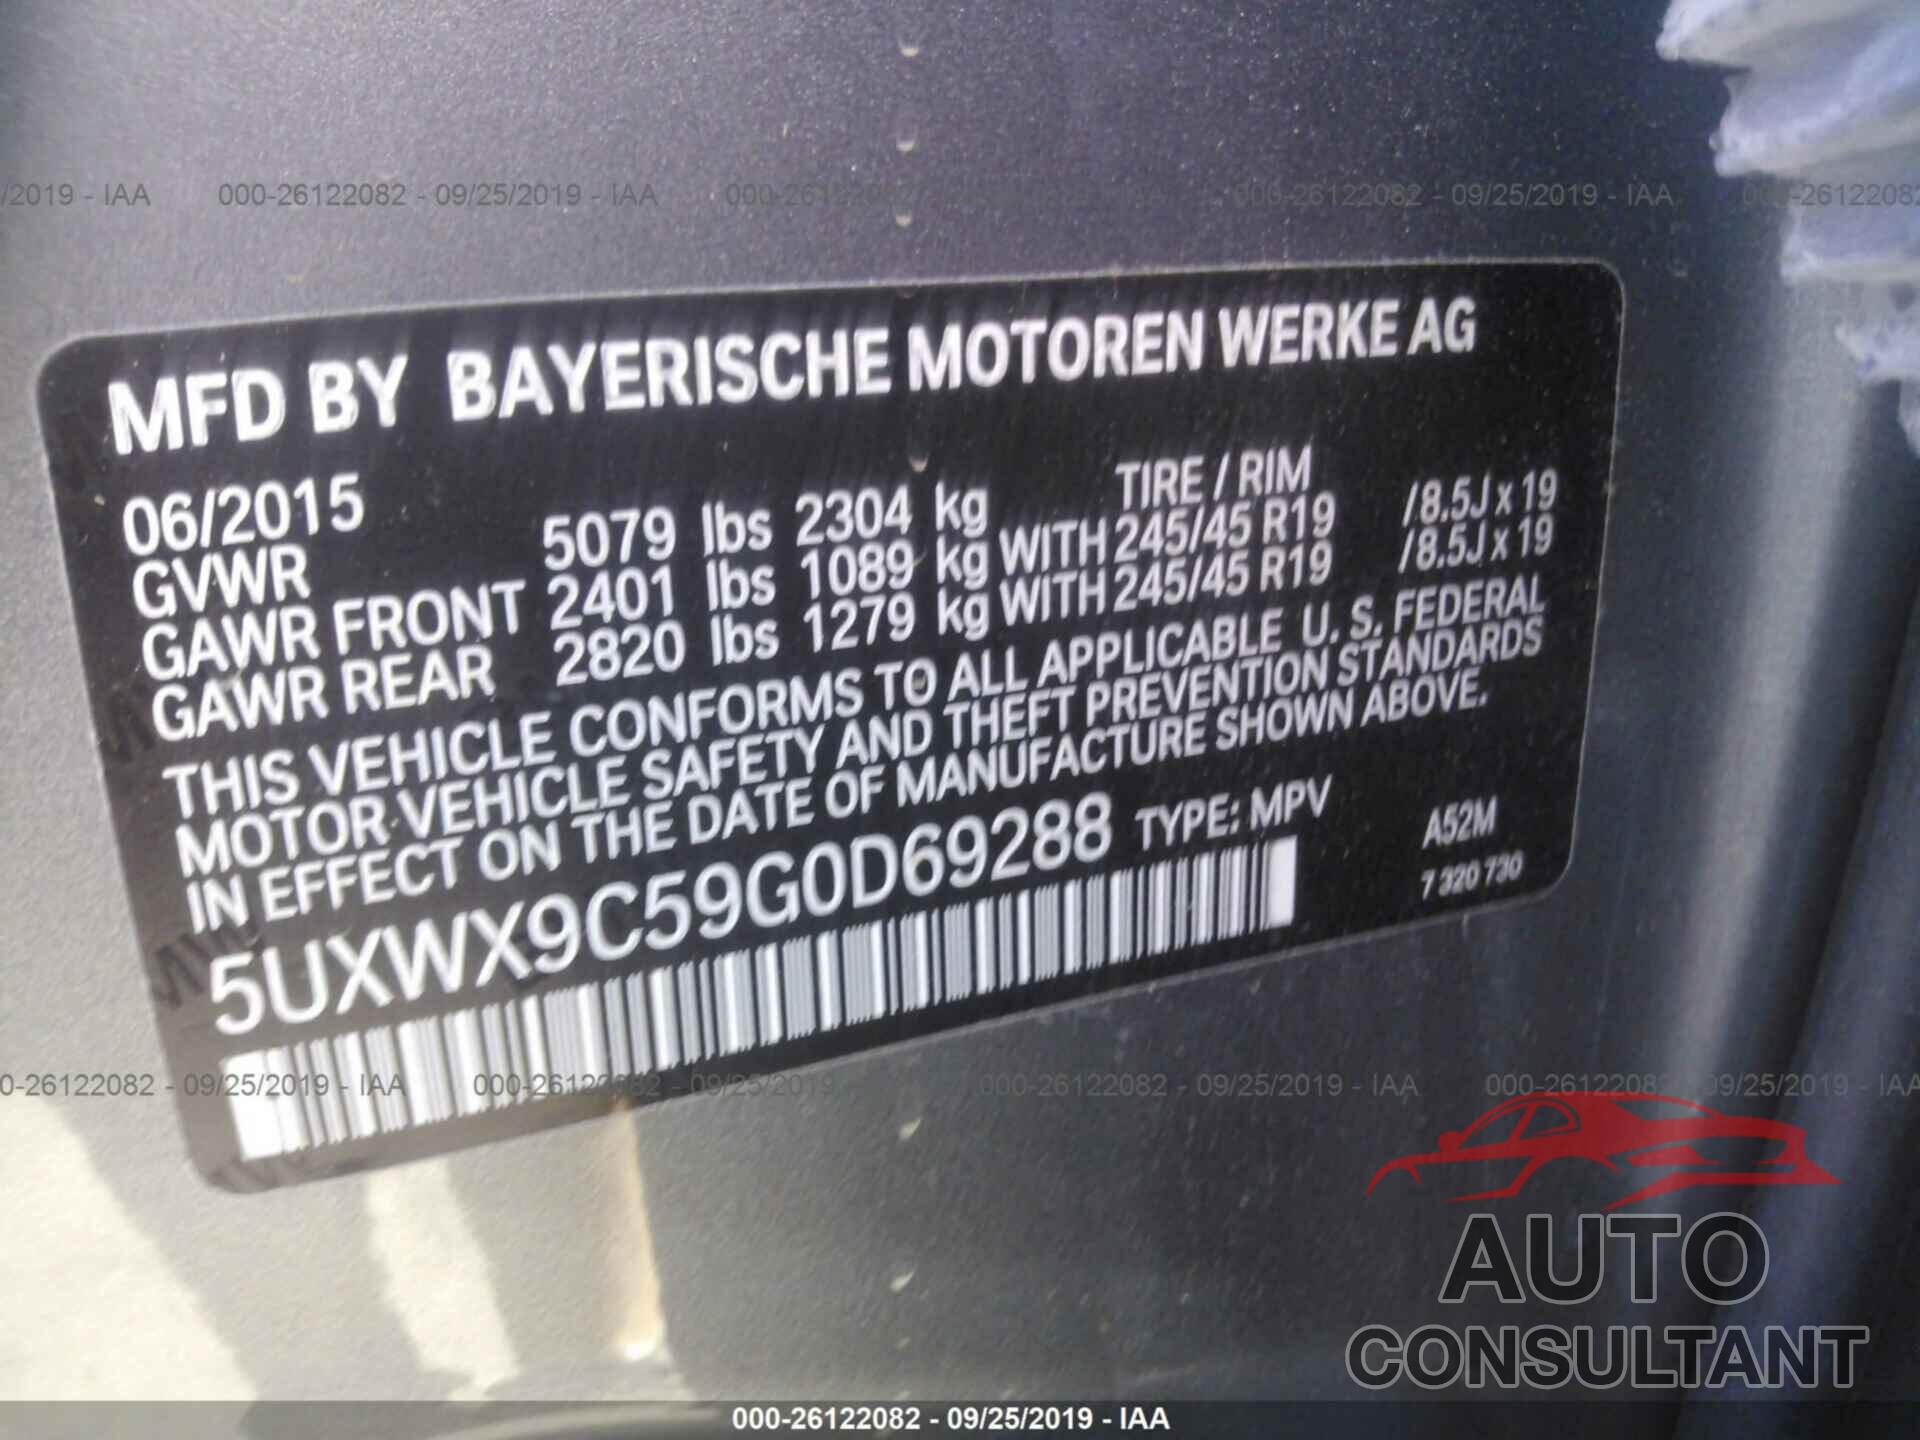 BMW X3 2016 - 5UXWX9C59G0D69288